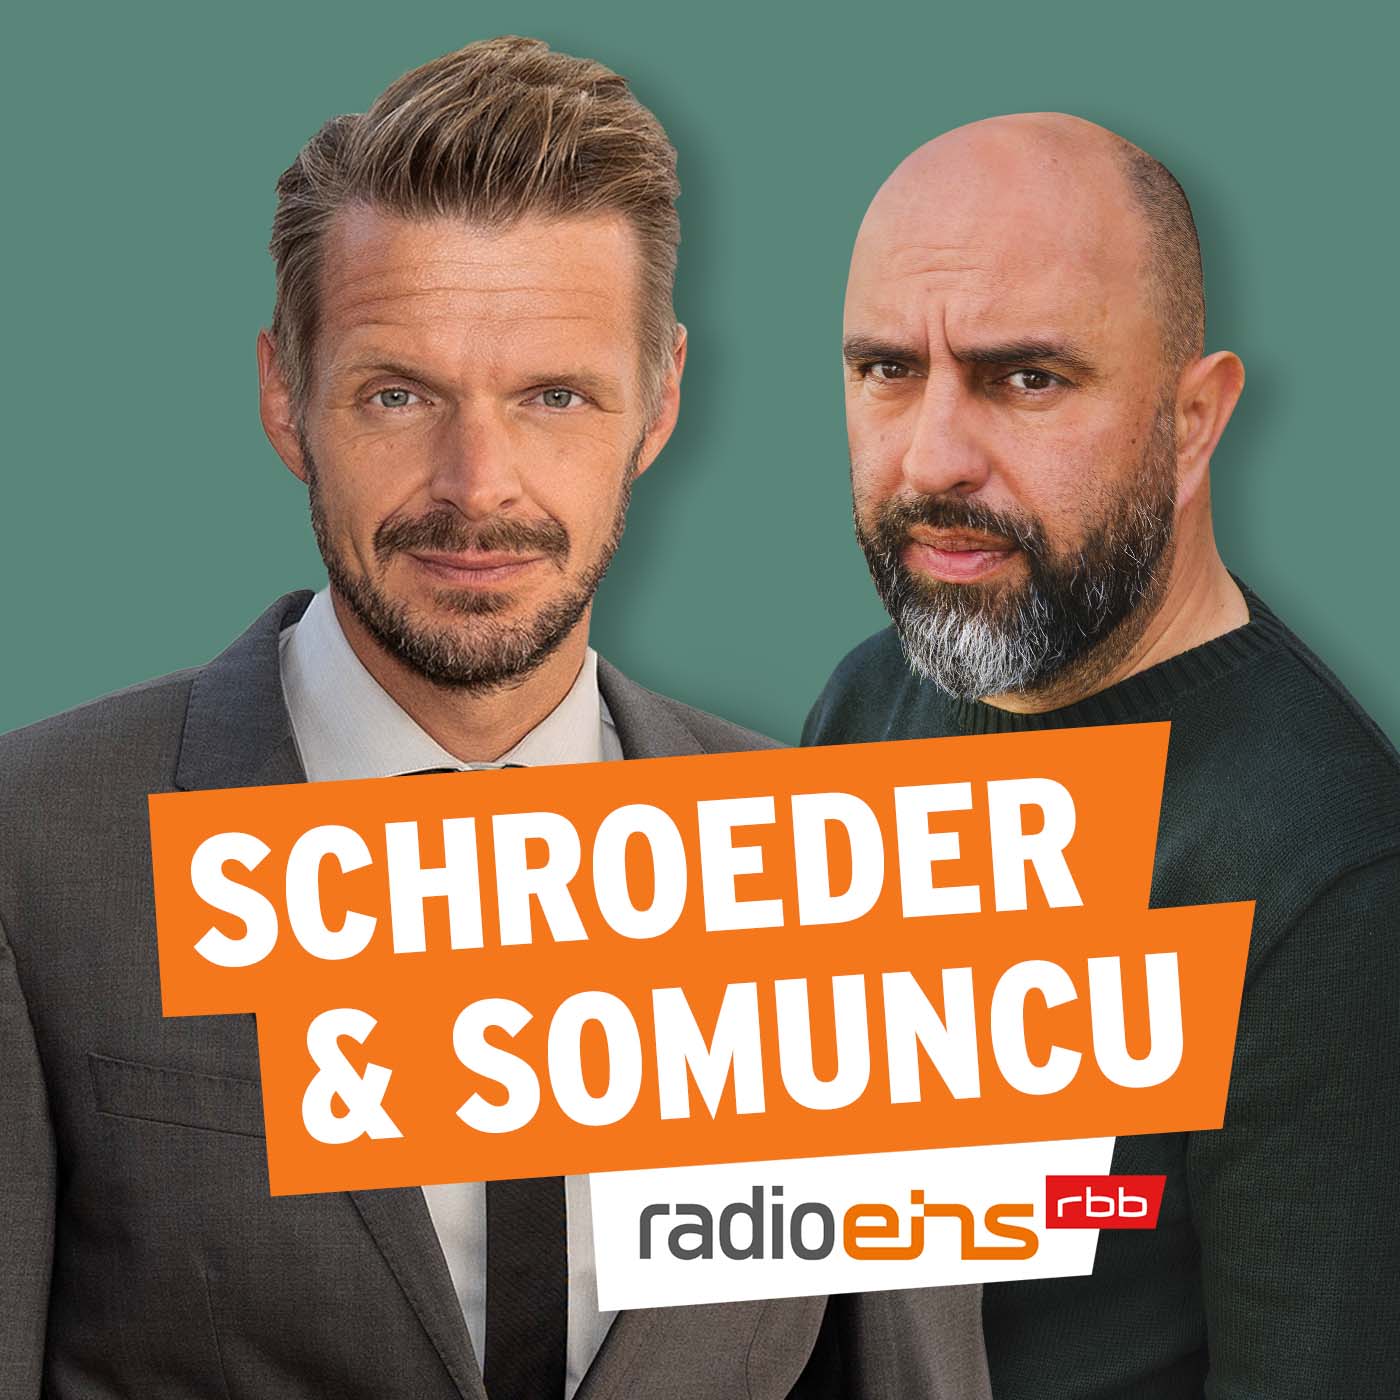 Schroeder & Somuncu - Lambrecht, Lützerath, Regierungsbilanz